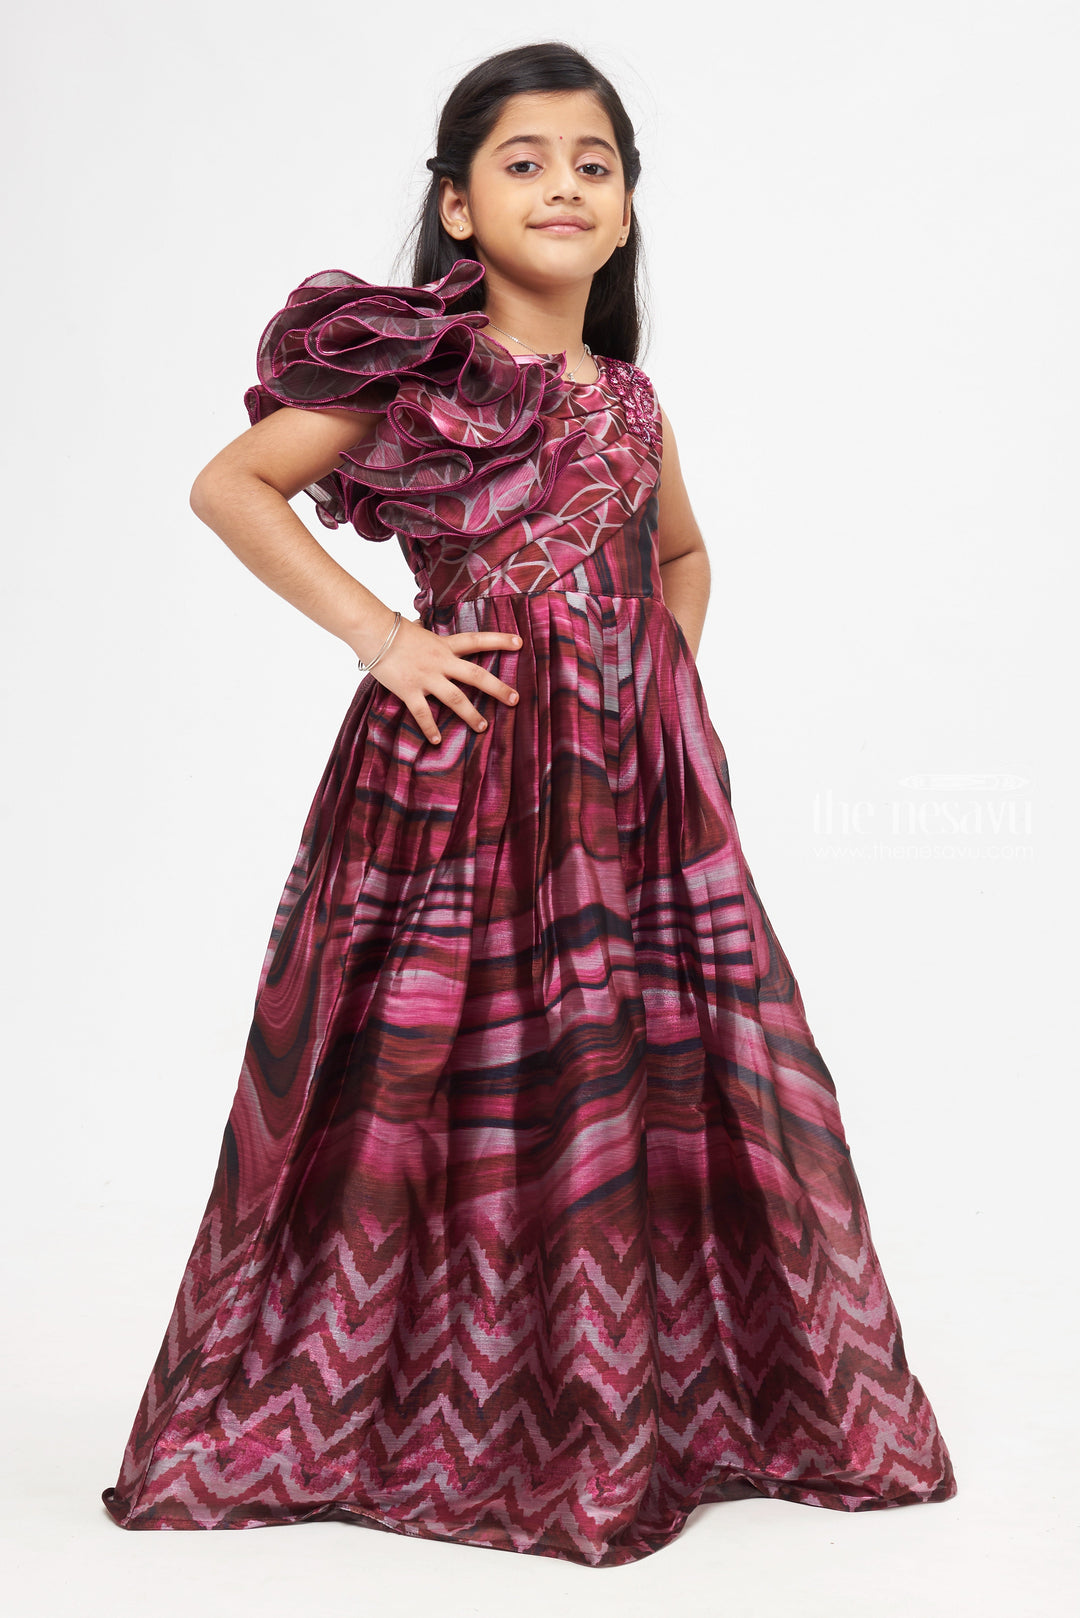 The Nesavu Girls Party Gown Blush Essence: Abstract Printed Ruffle Pleated Pink Anarkali for Girls- Stylish Festive Gowns Nesavu Latest Anarkali Dress Patterns | Beautiful Anarkali Dress for Wedding | The Nesavu